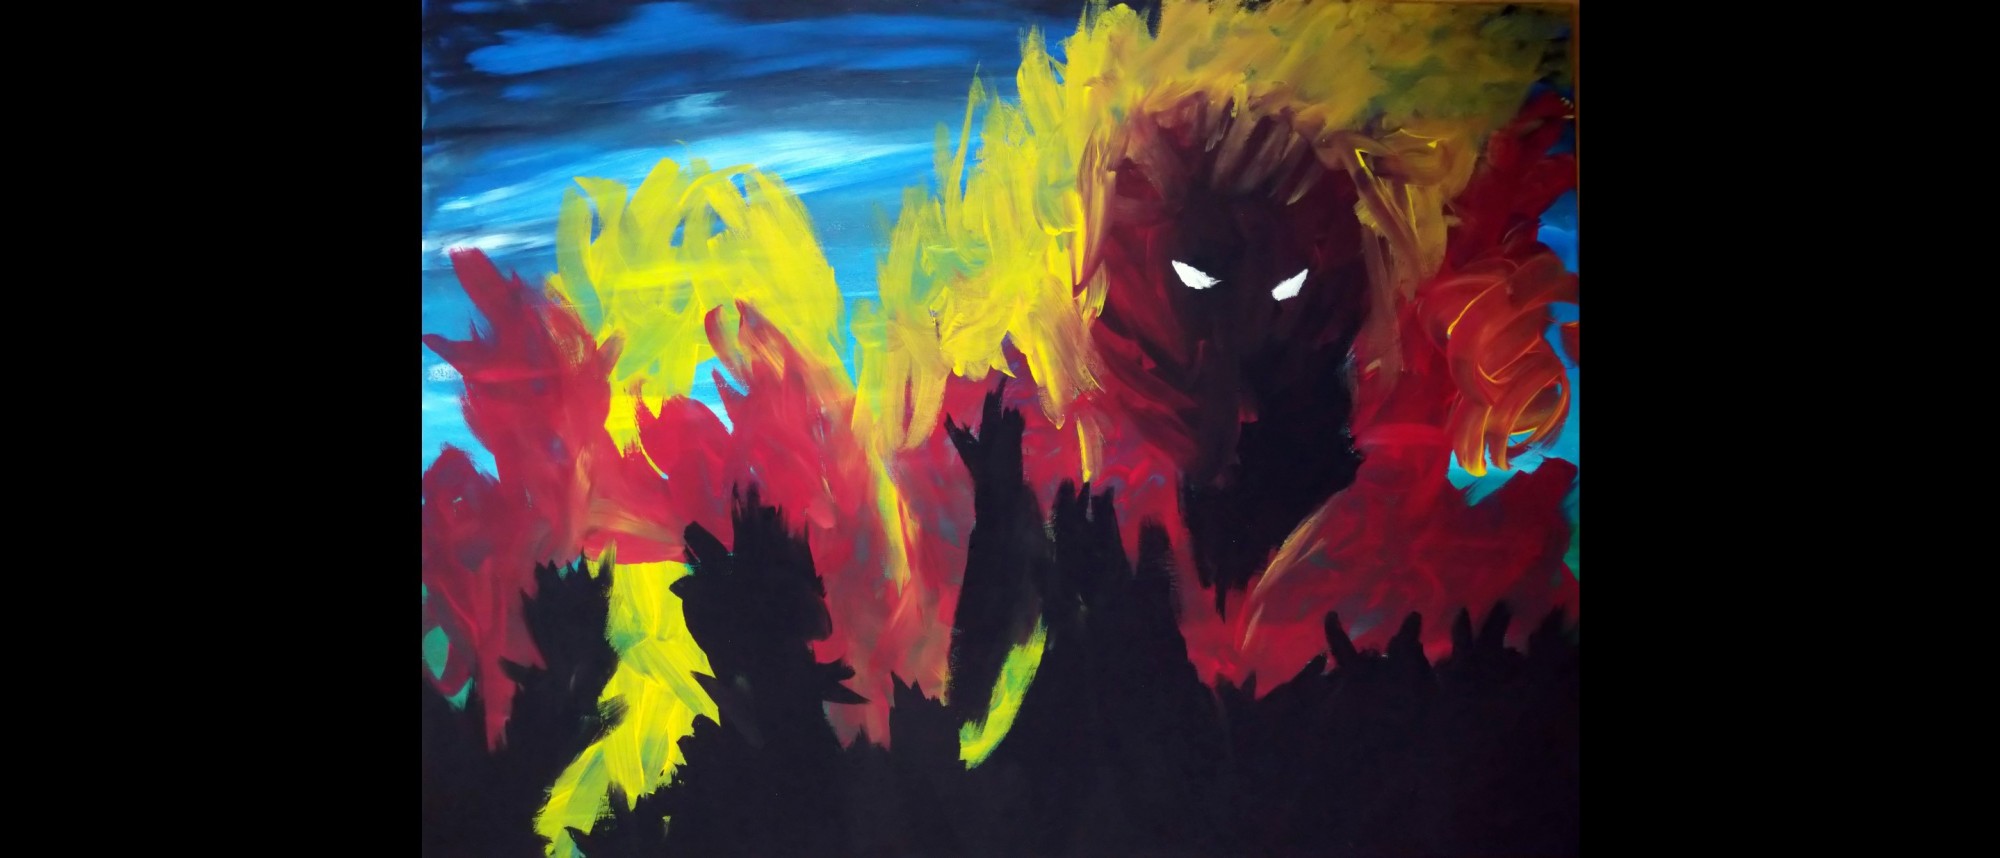 Acrylbild mit düsterer Stimmung, inmitten von rot-gelben Flammen eine schwarze Figur mit weißen Augen